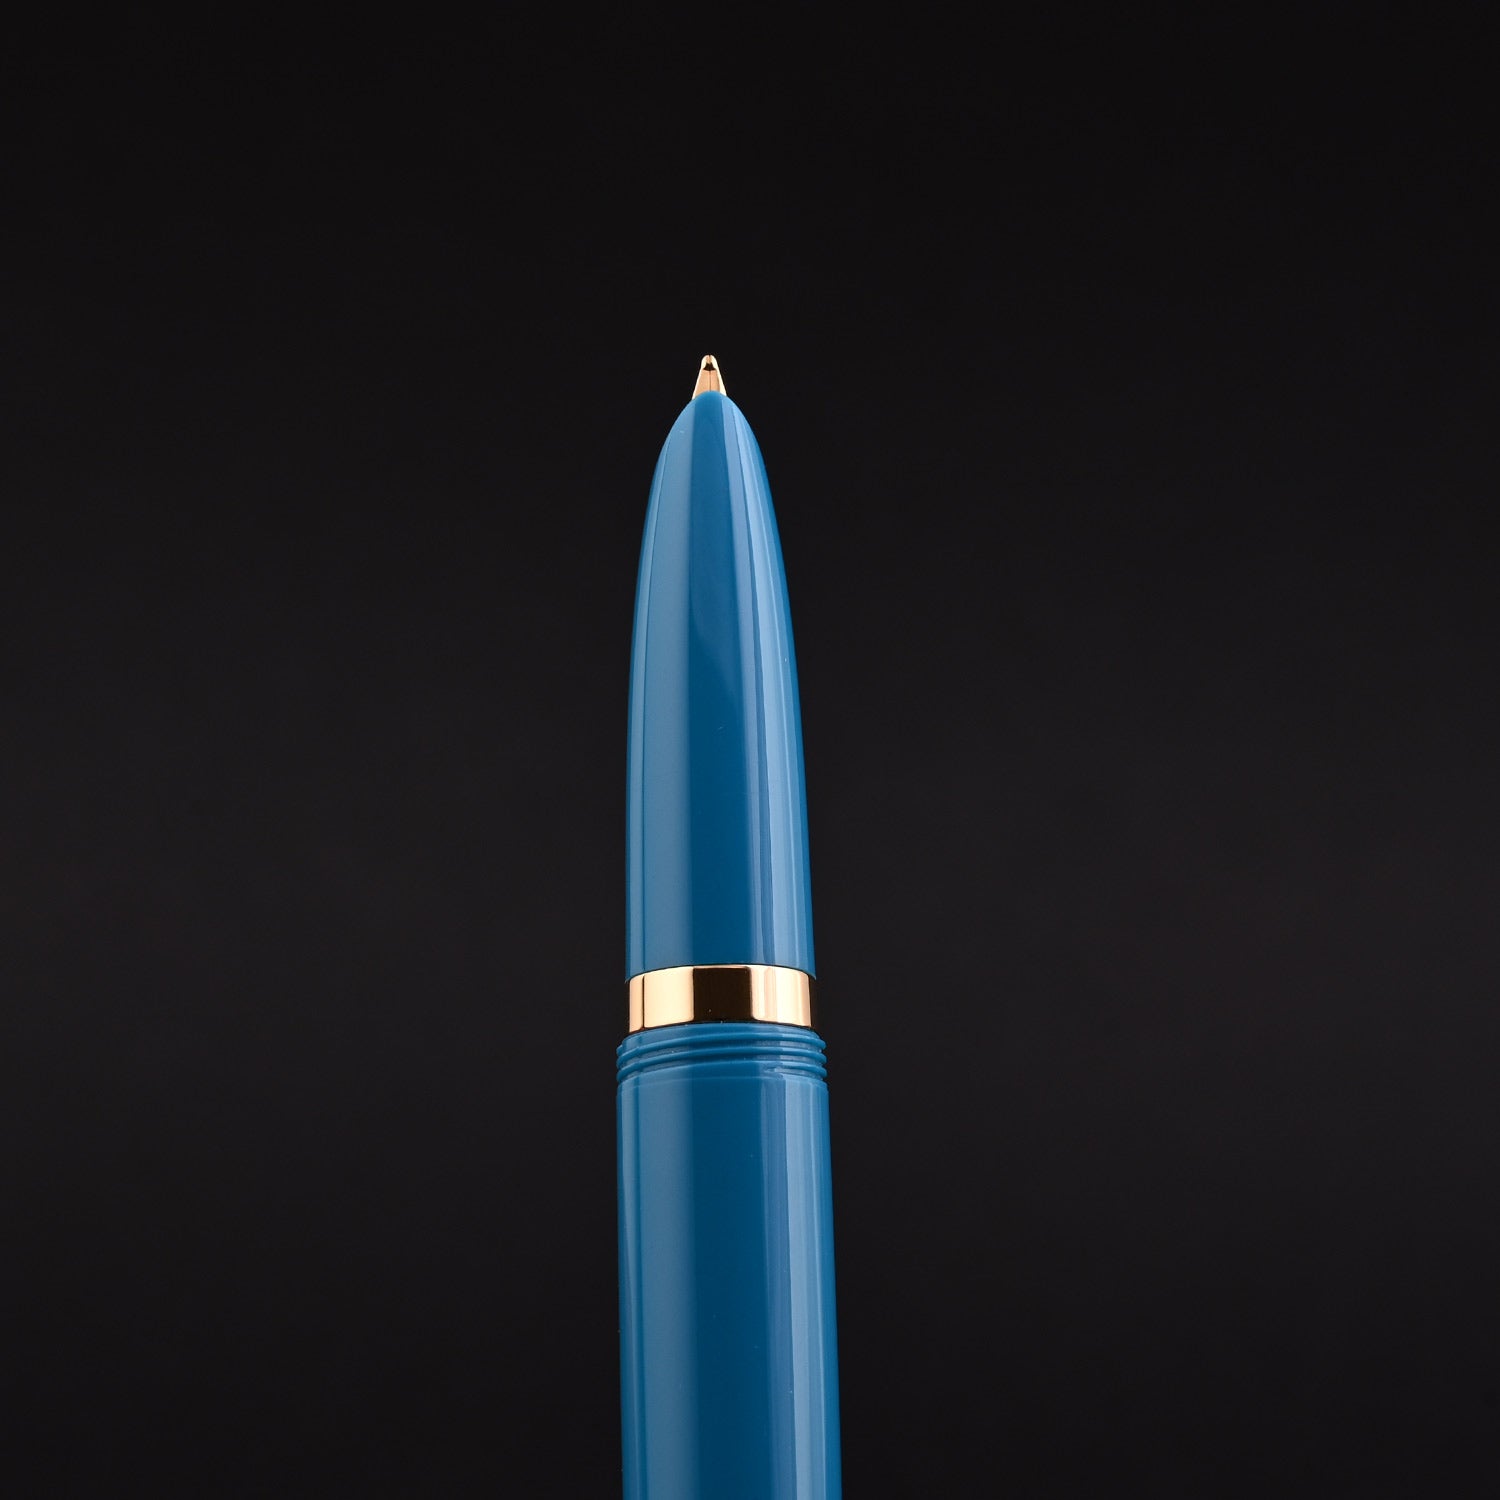 Parker 51 Premium Turquoise GT Fountain Pen